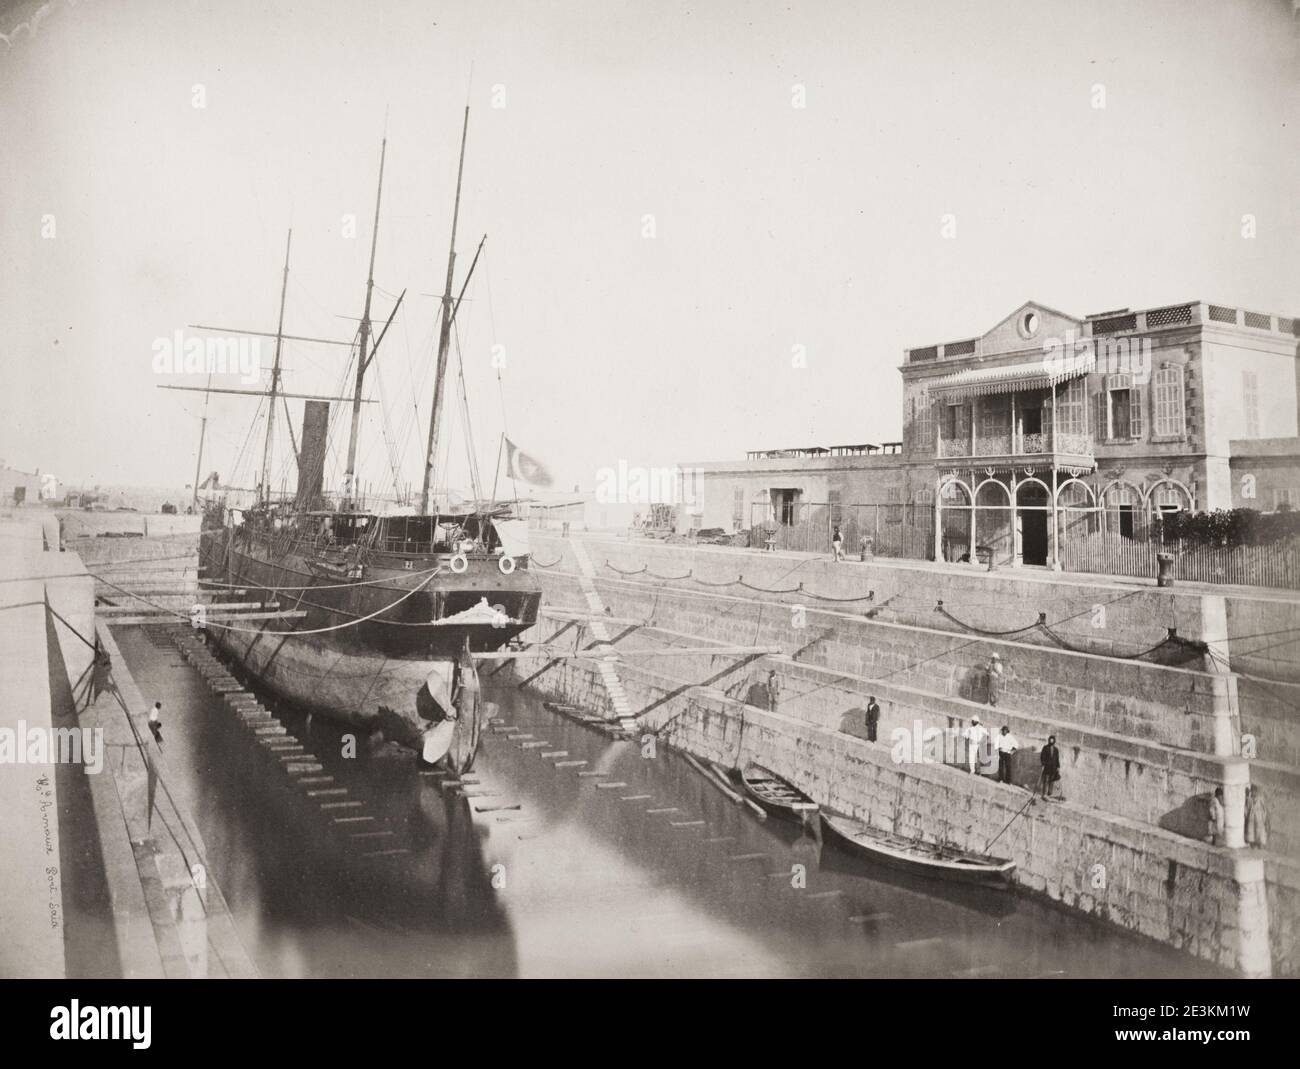 Fotografía del siglo XIX: Barco en dique seco, Egipto, probablemente en el Canal de Suez. Foto de stock